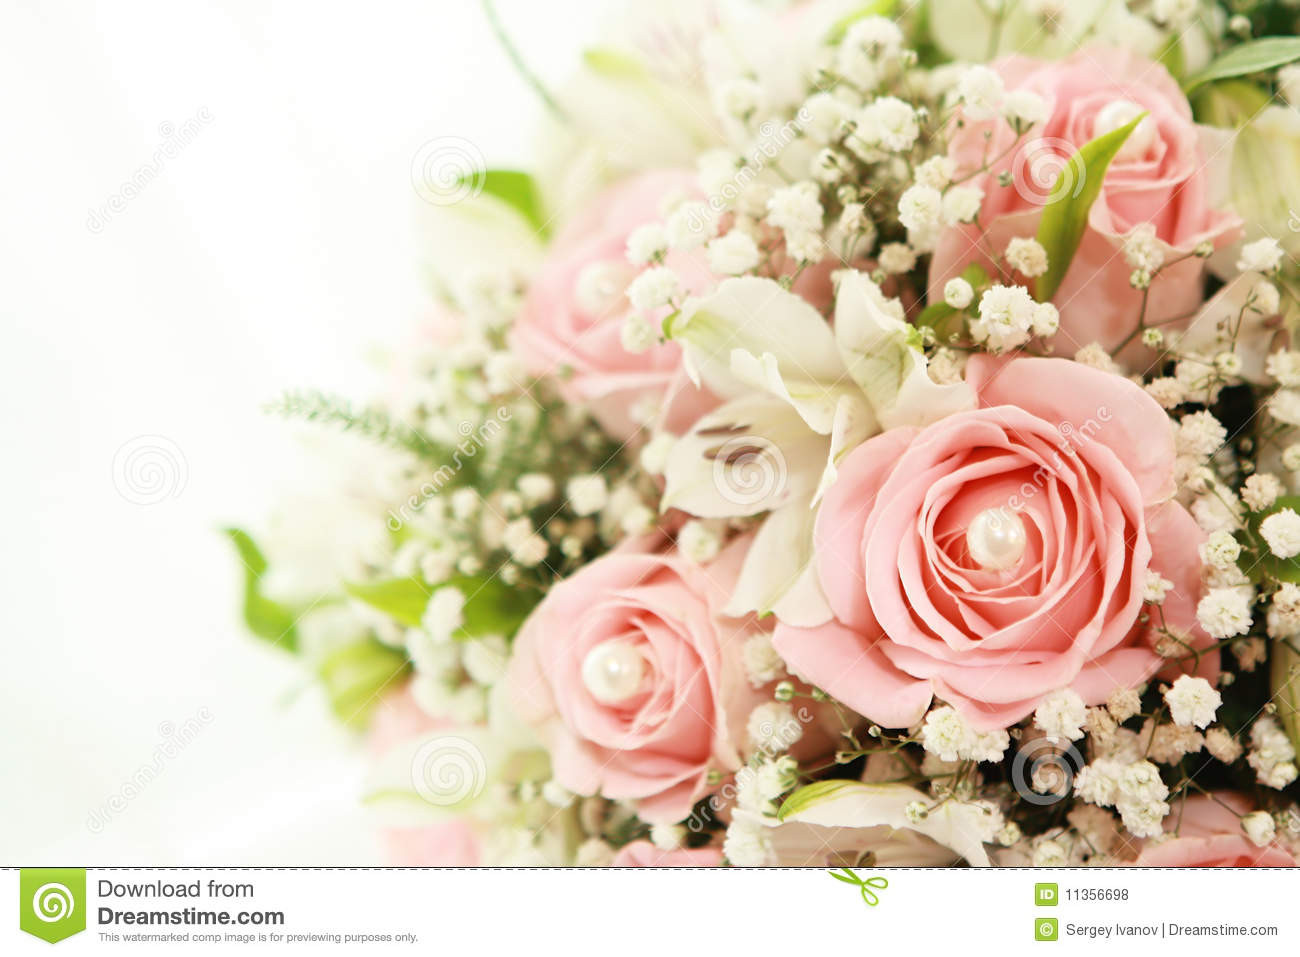 Hochzeit Blumenstrauß
 Blumenstrauß Der Hochzeit Lizenzfreie Stockfotos Bild